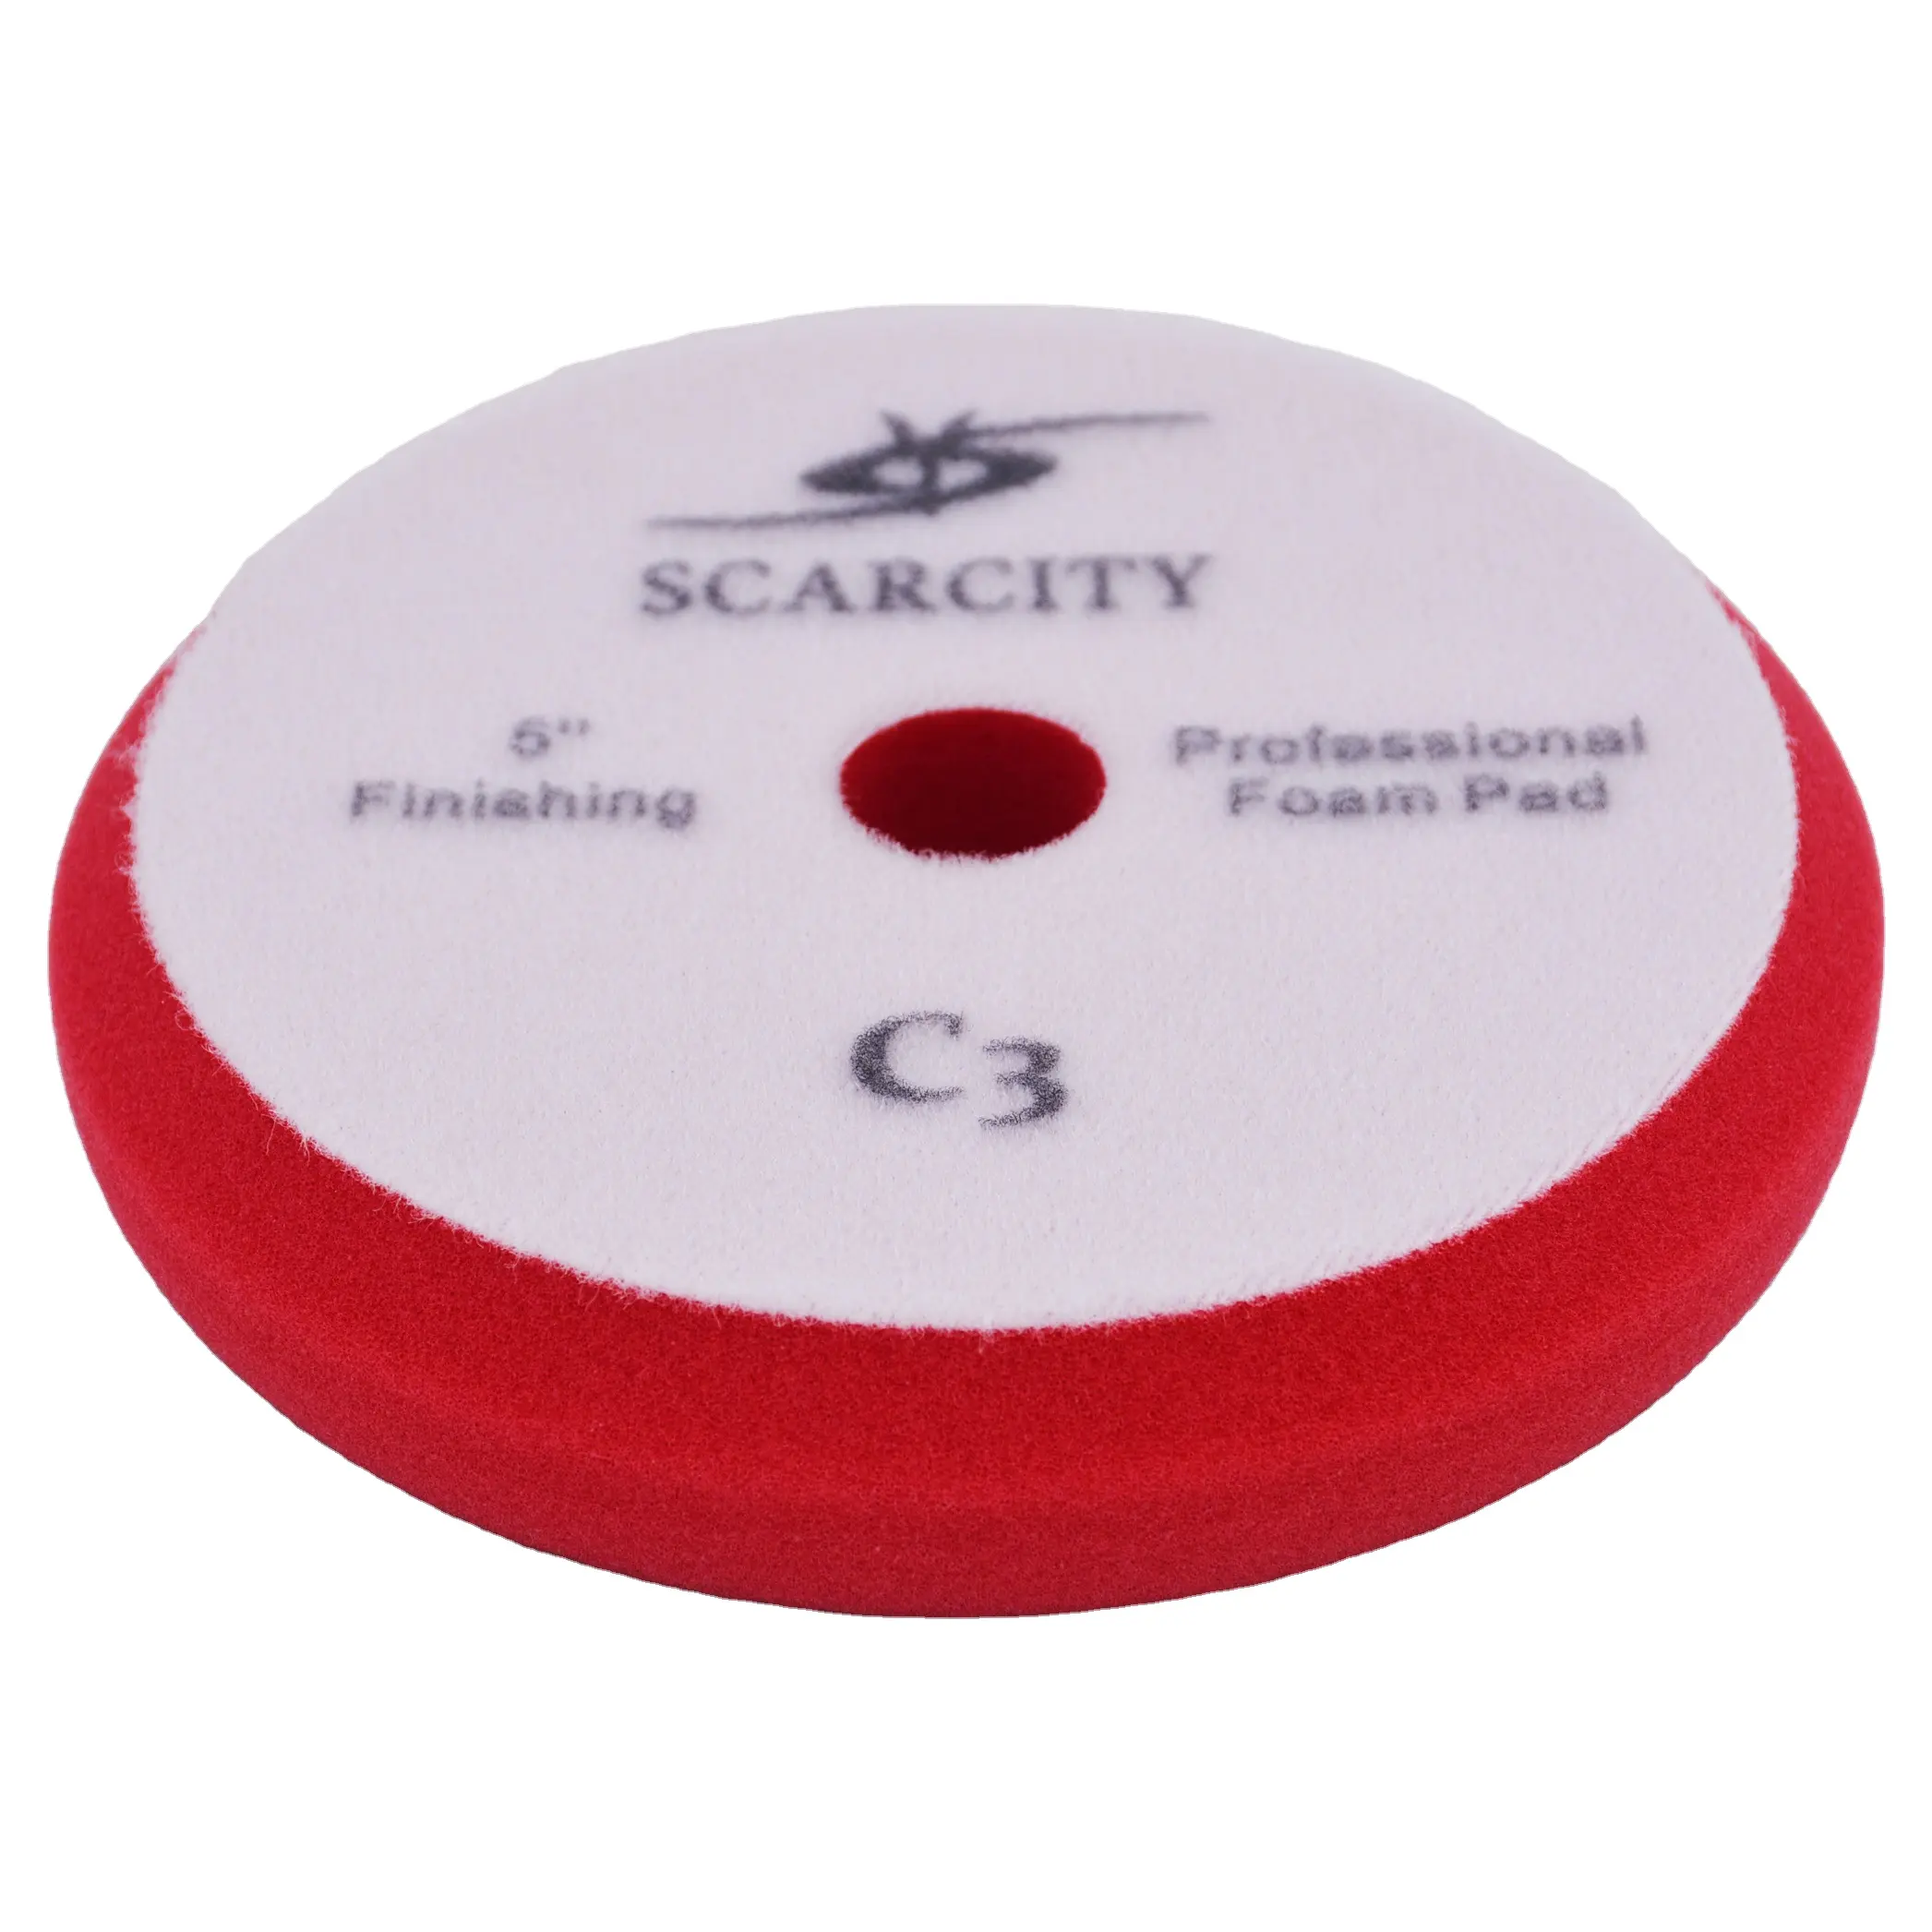 SCARCITY 5 Zoll Schwamm pad mit hoher Qualität zum Polieren